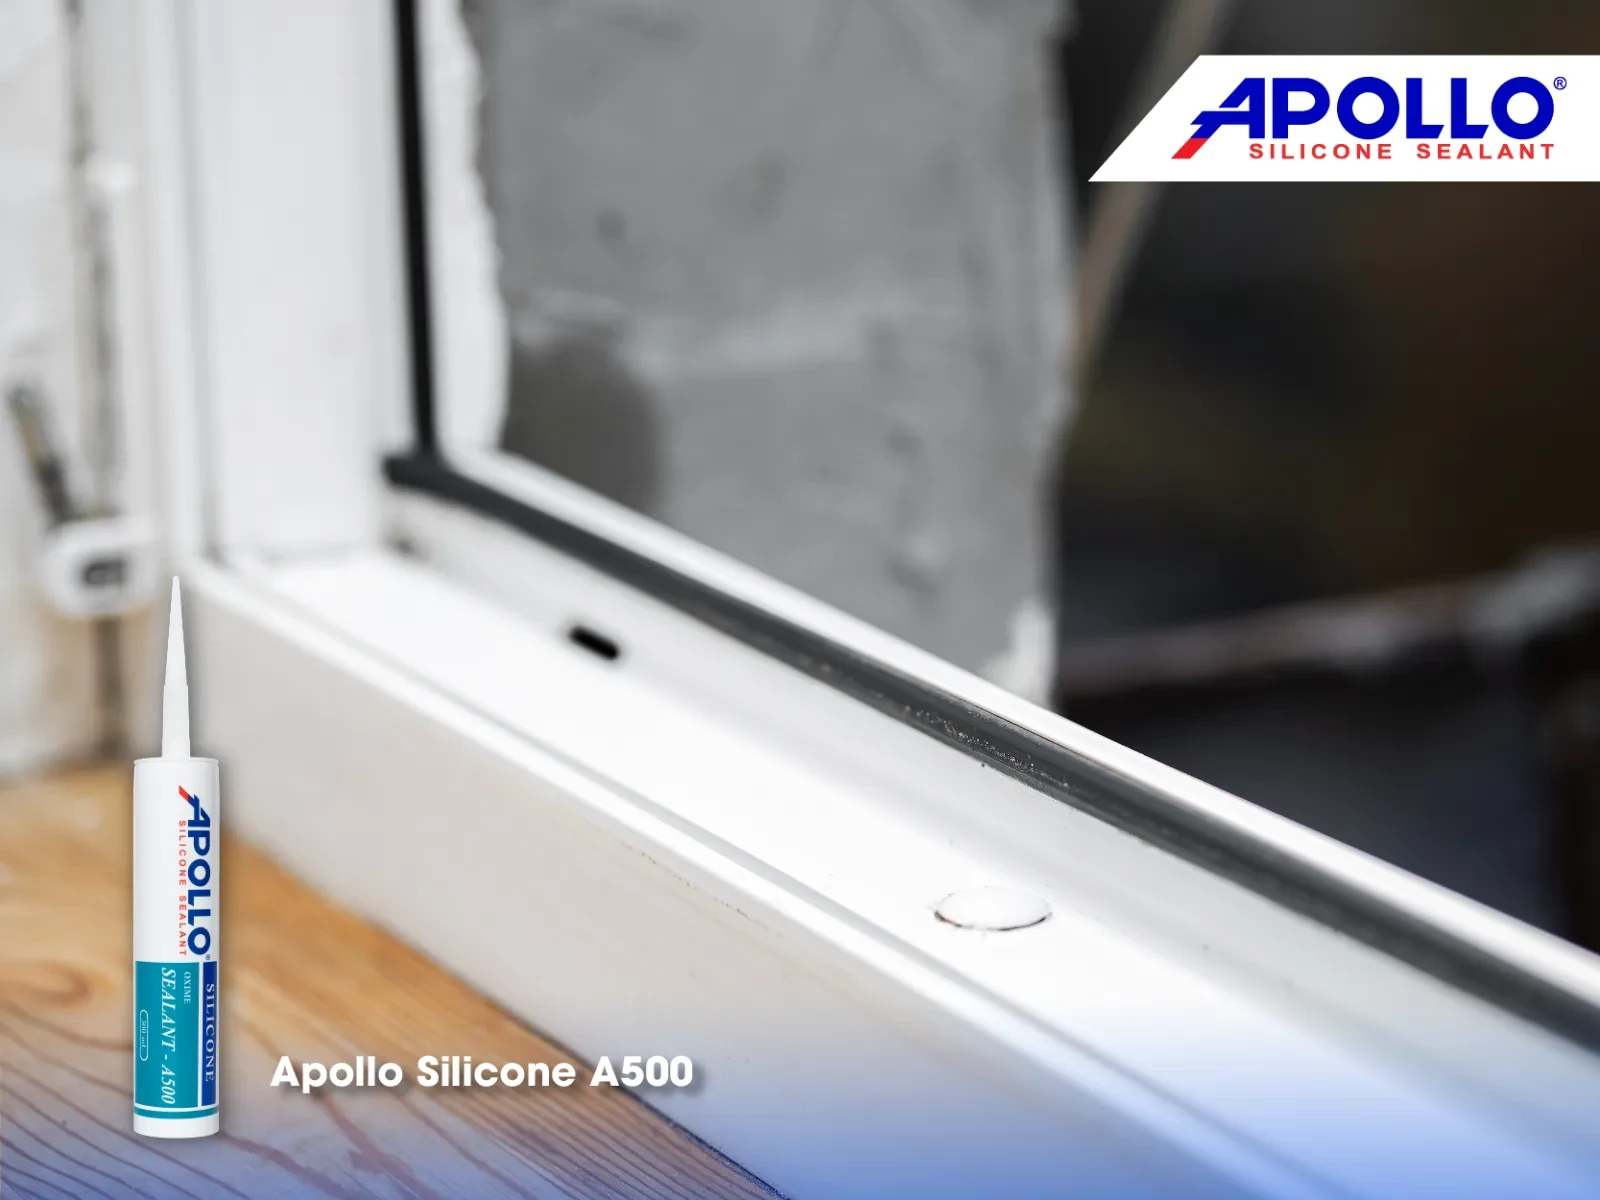 Apollo Silicone A500 cũng được dùng để trám kín các mối nối khe hở cửa sổ kính để mang đến hiệu quả thẩm mỹ và chống thấm cao hơn